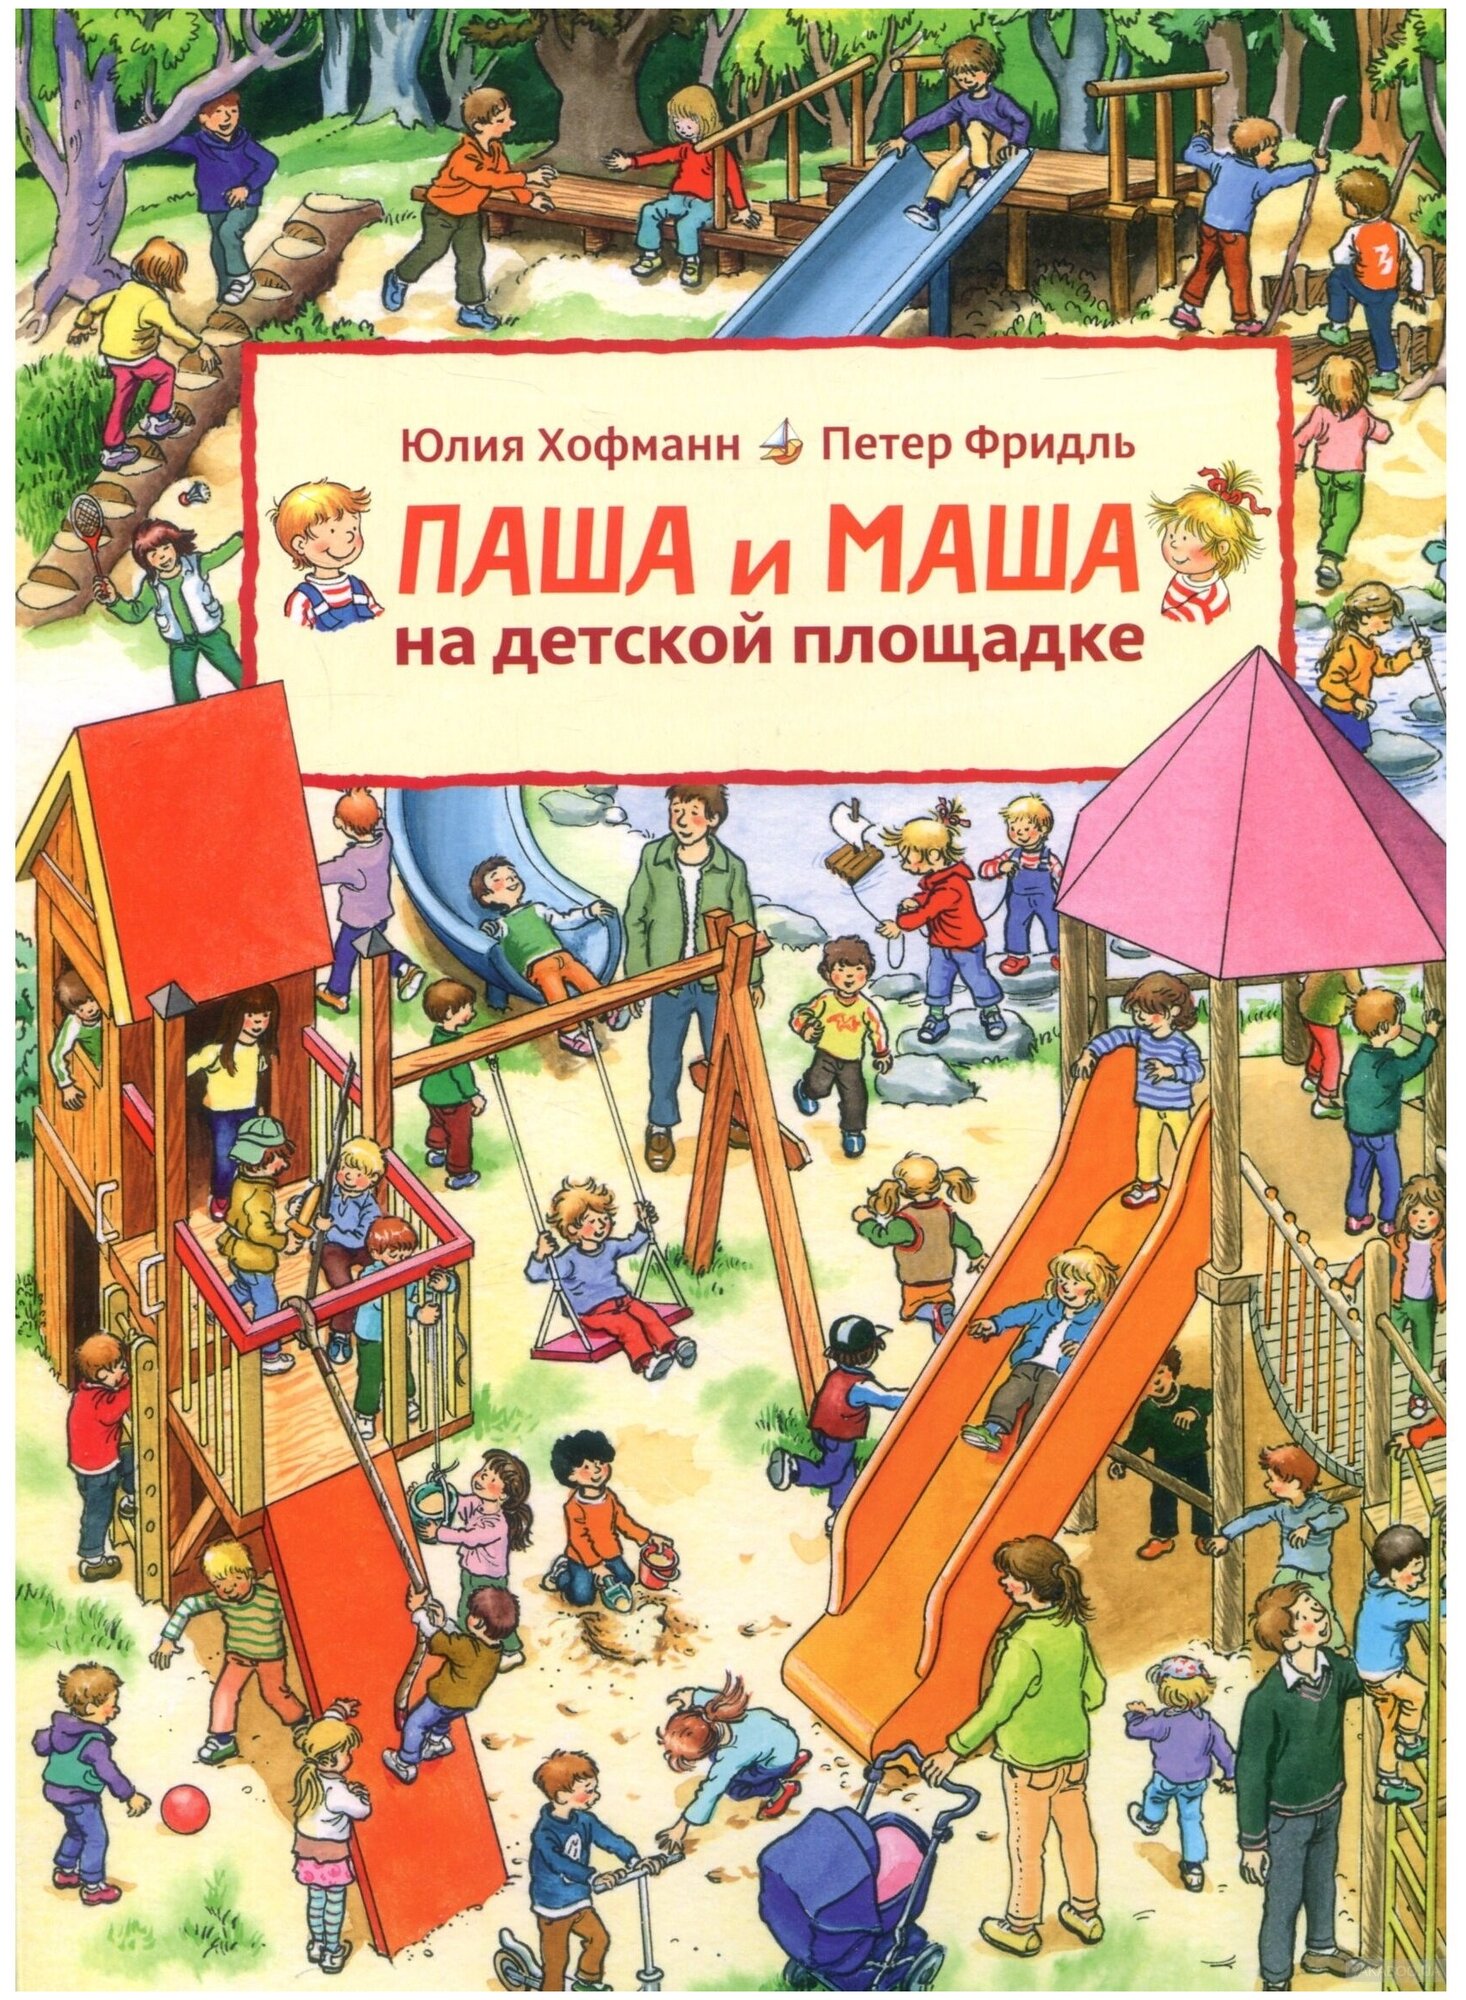 Паша и Маша на детской площадке (виммельбух) - фото №1